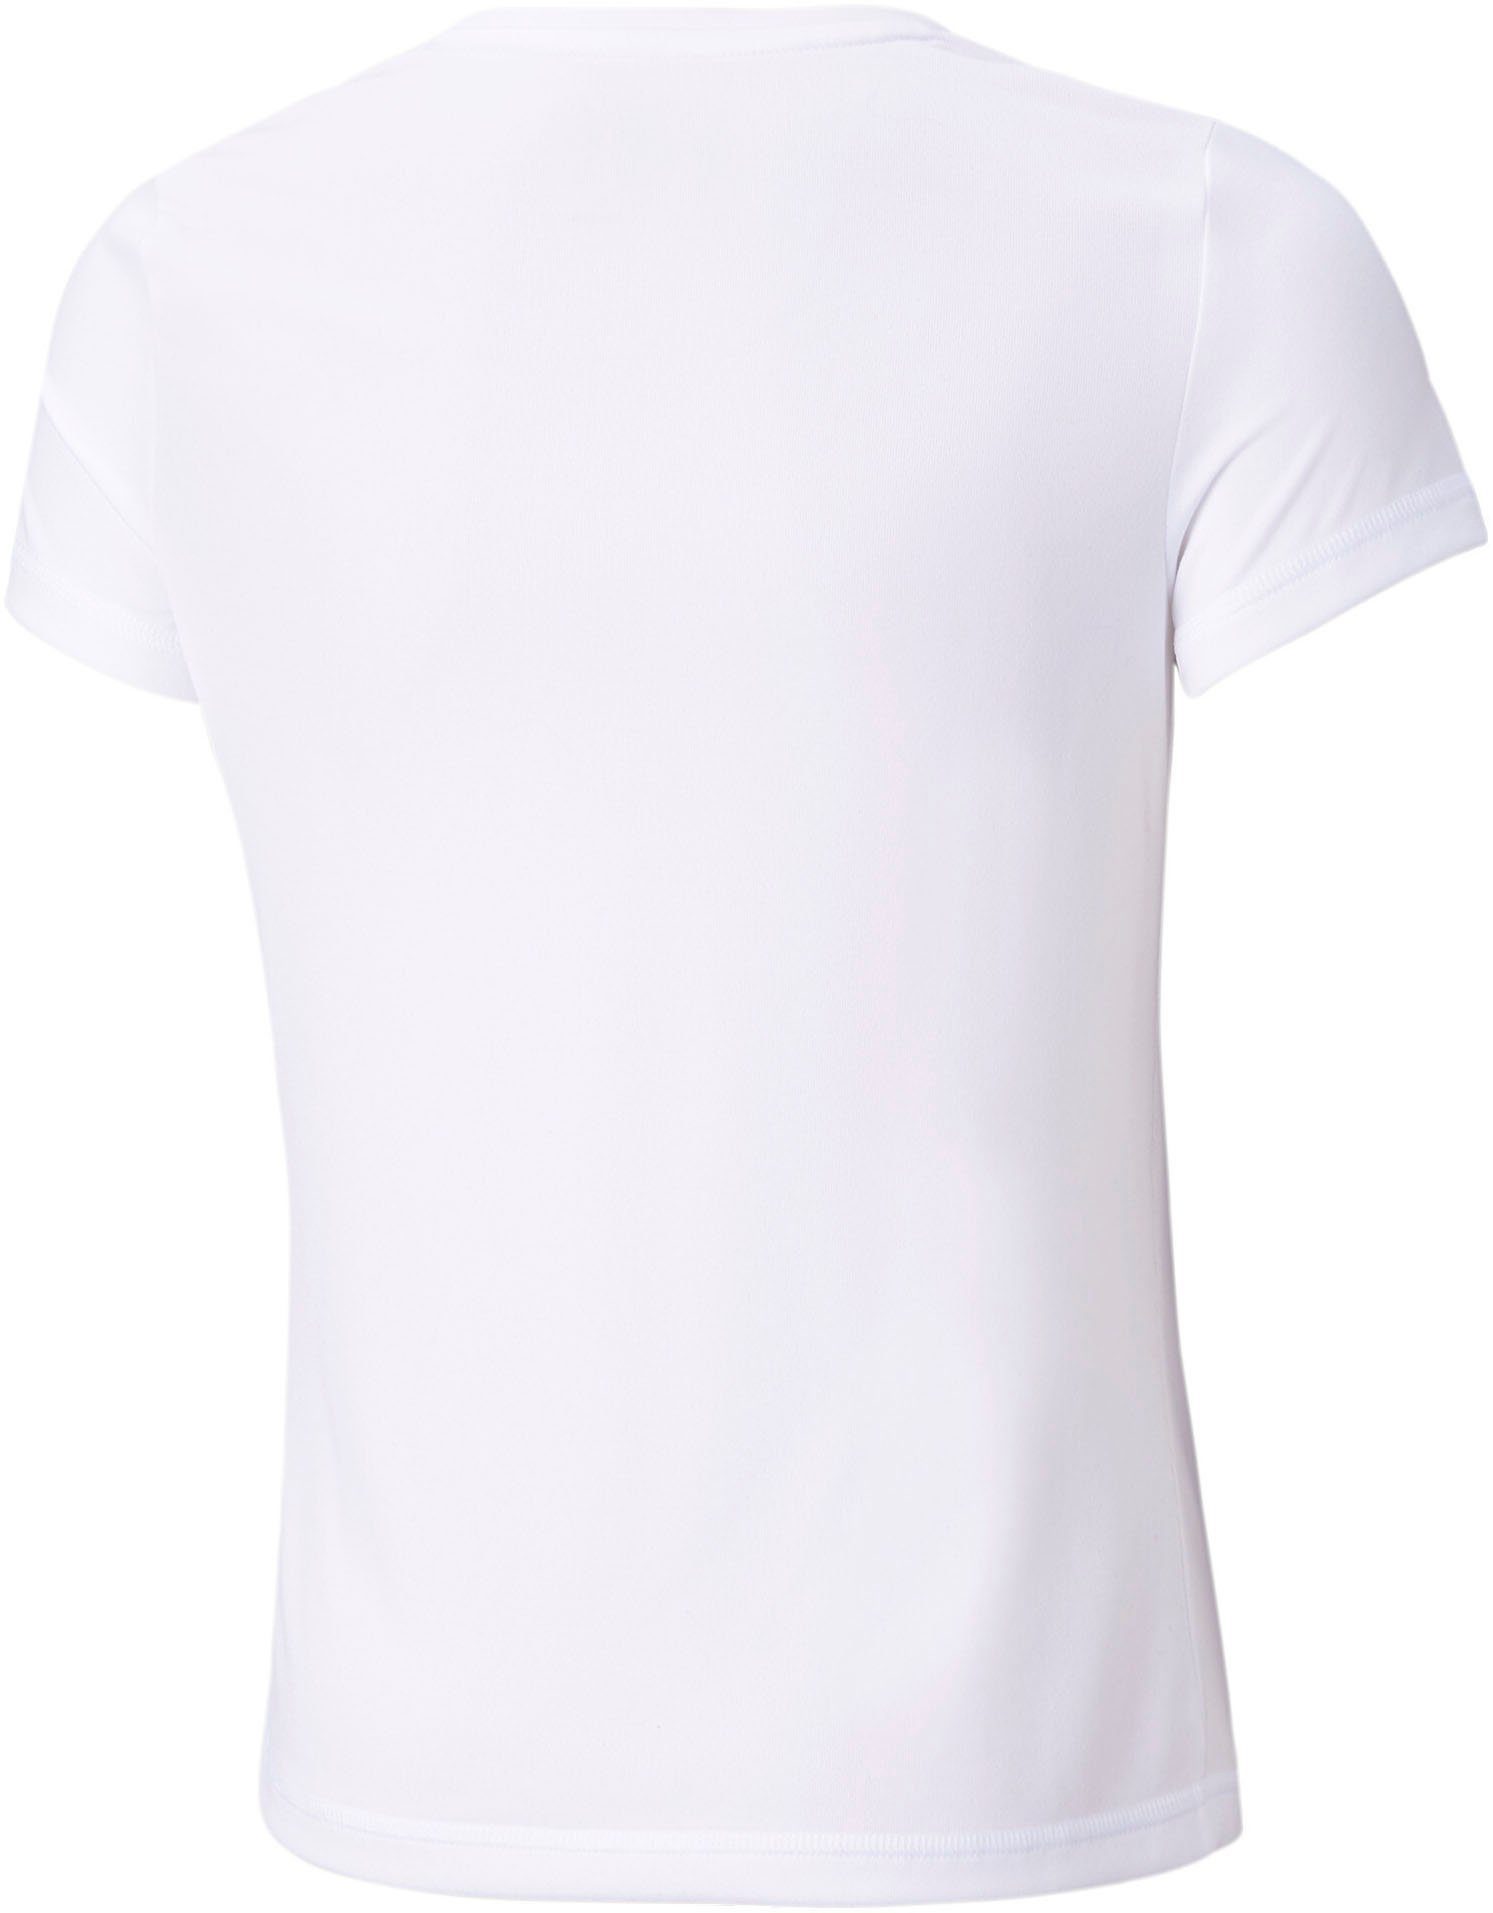 ACTIVE G TEE White T-Shirt Puma PUMA